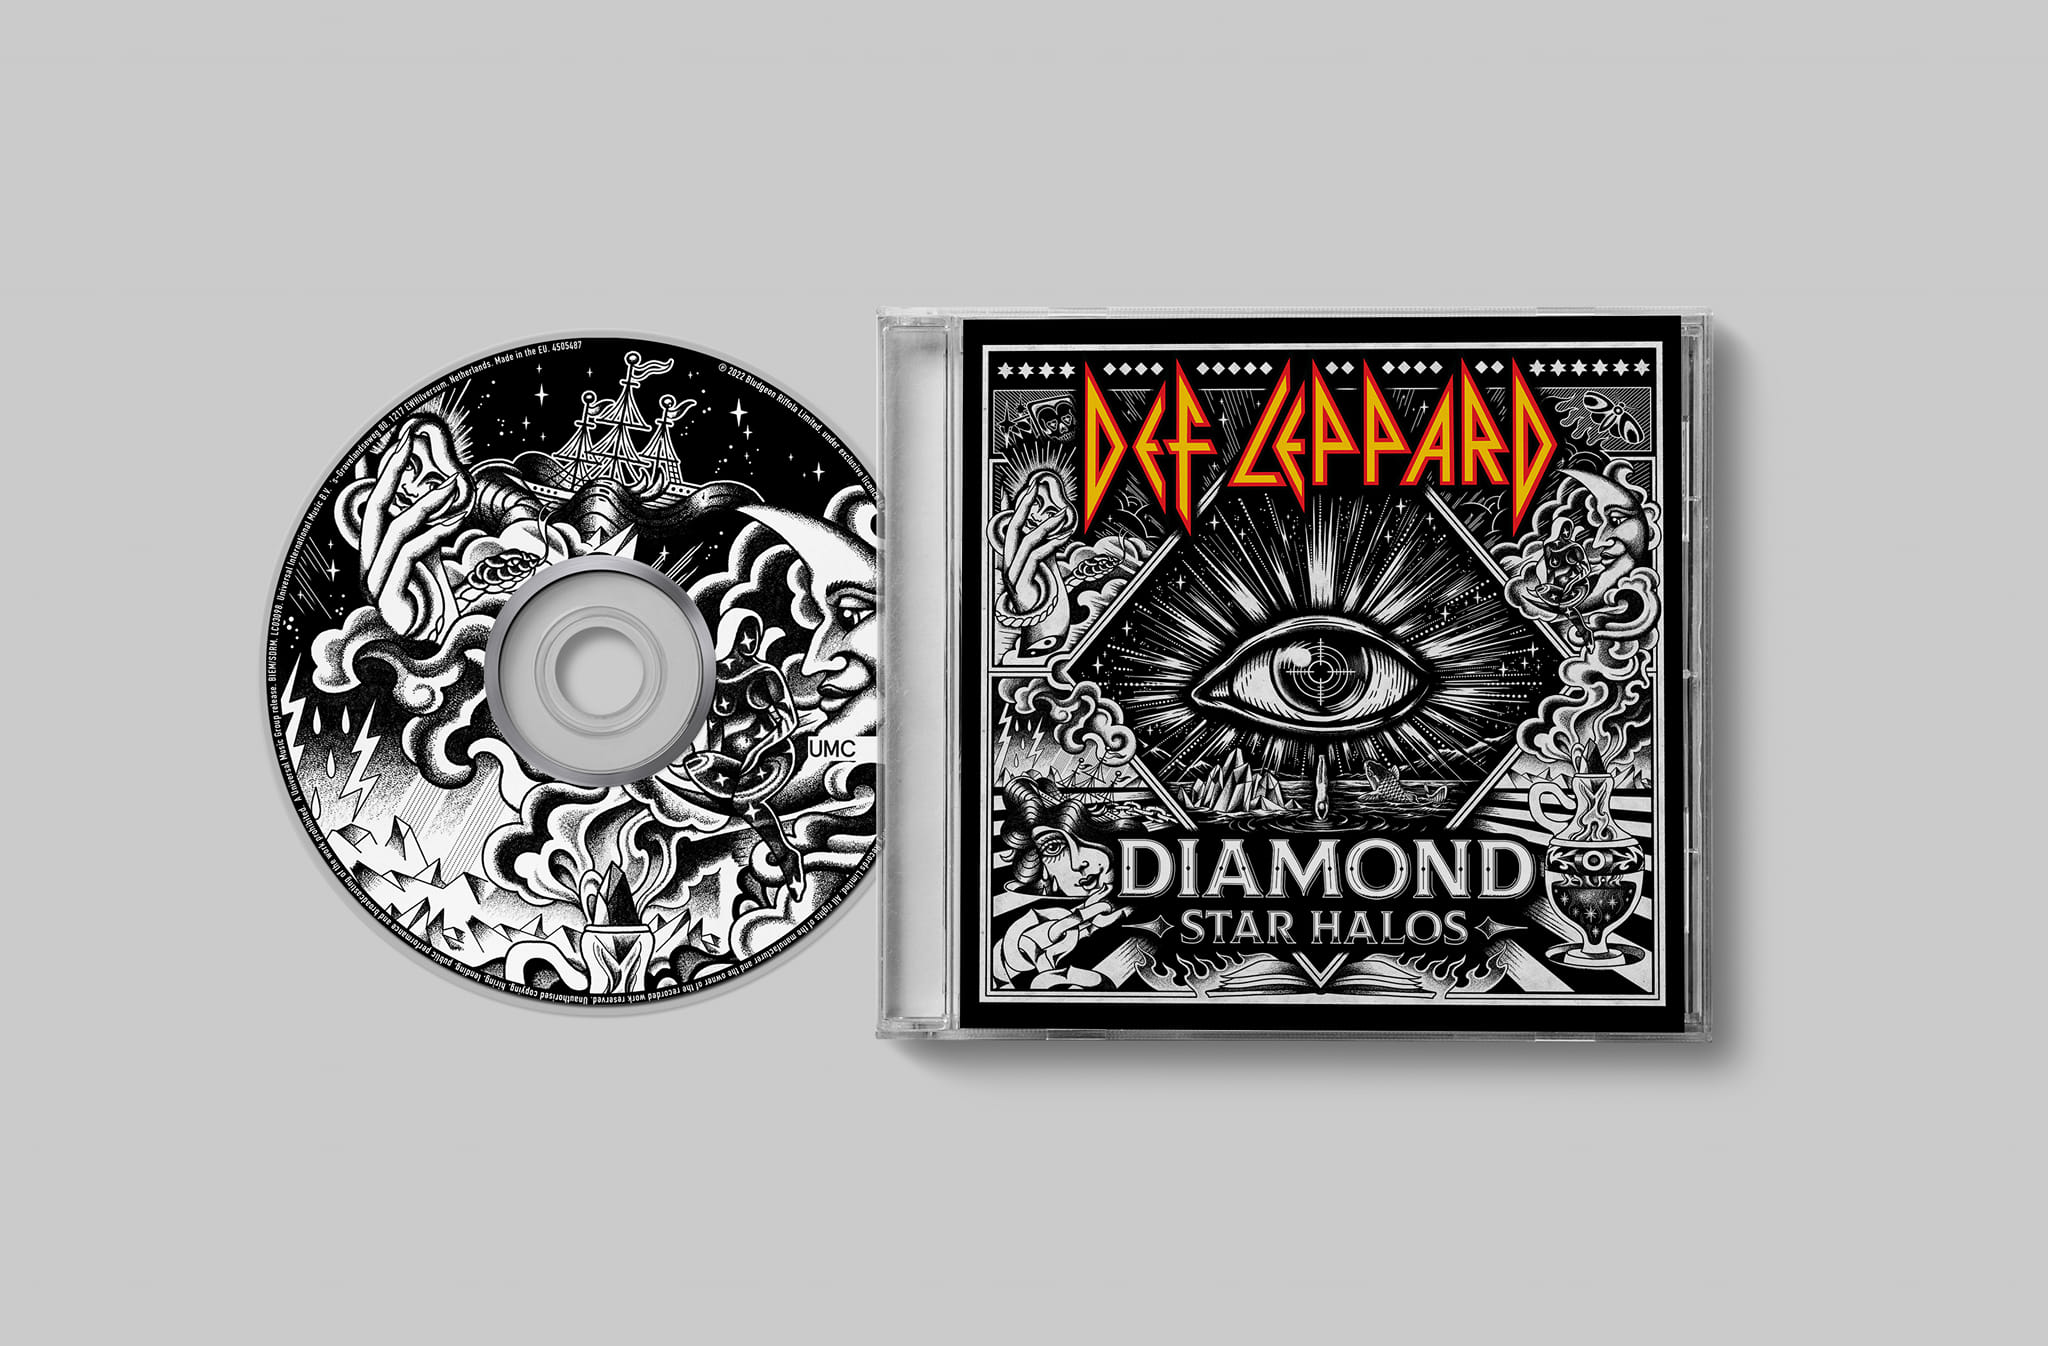 Οι Def Leppard κυκλοφορούν ολοκαίνουργιο άλμπουμ, το "Diamond Star Halos", το Μά... 1